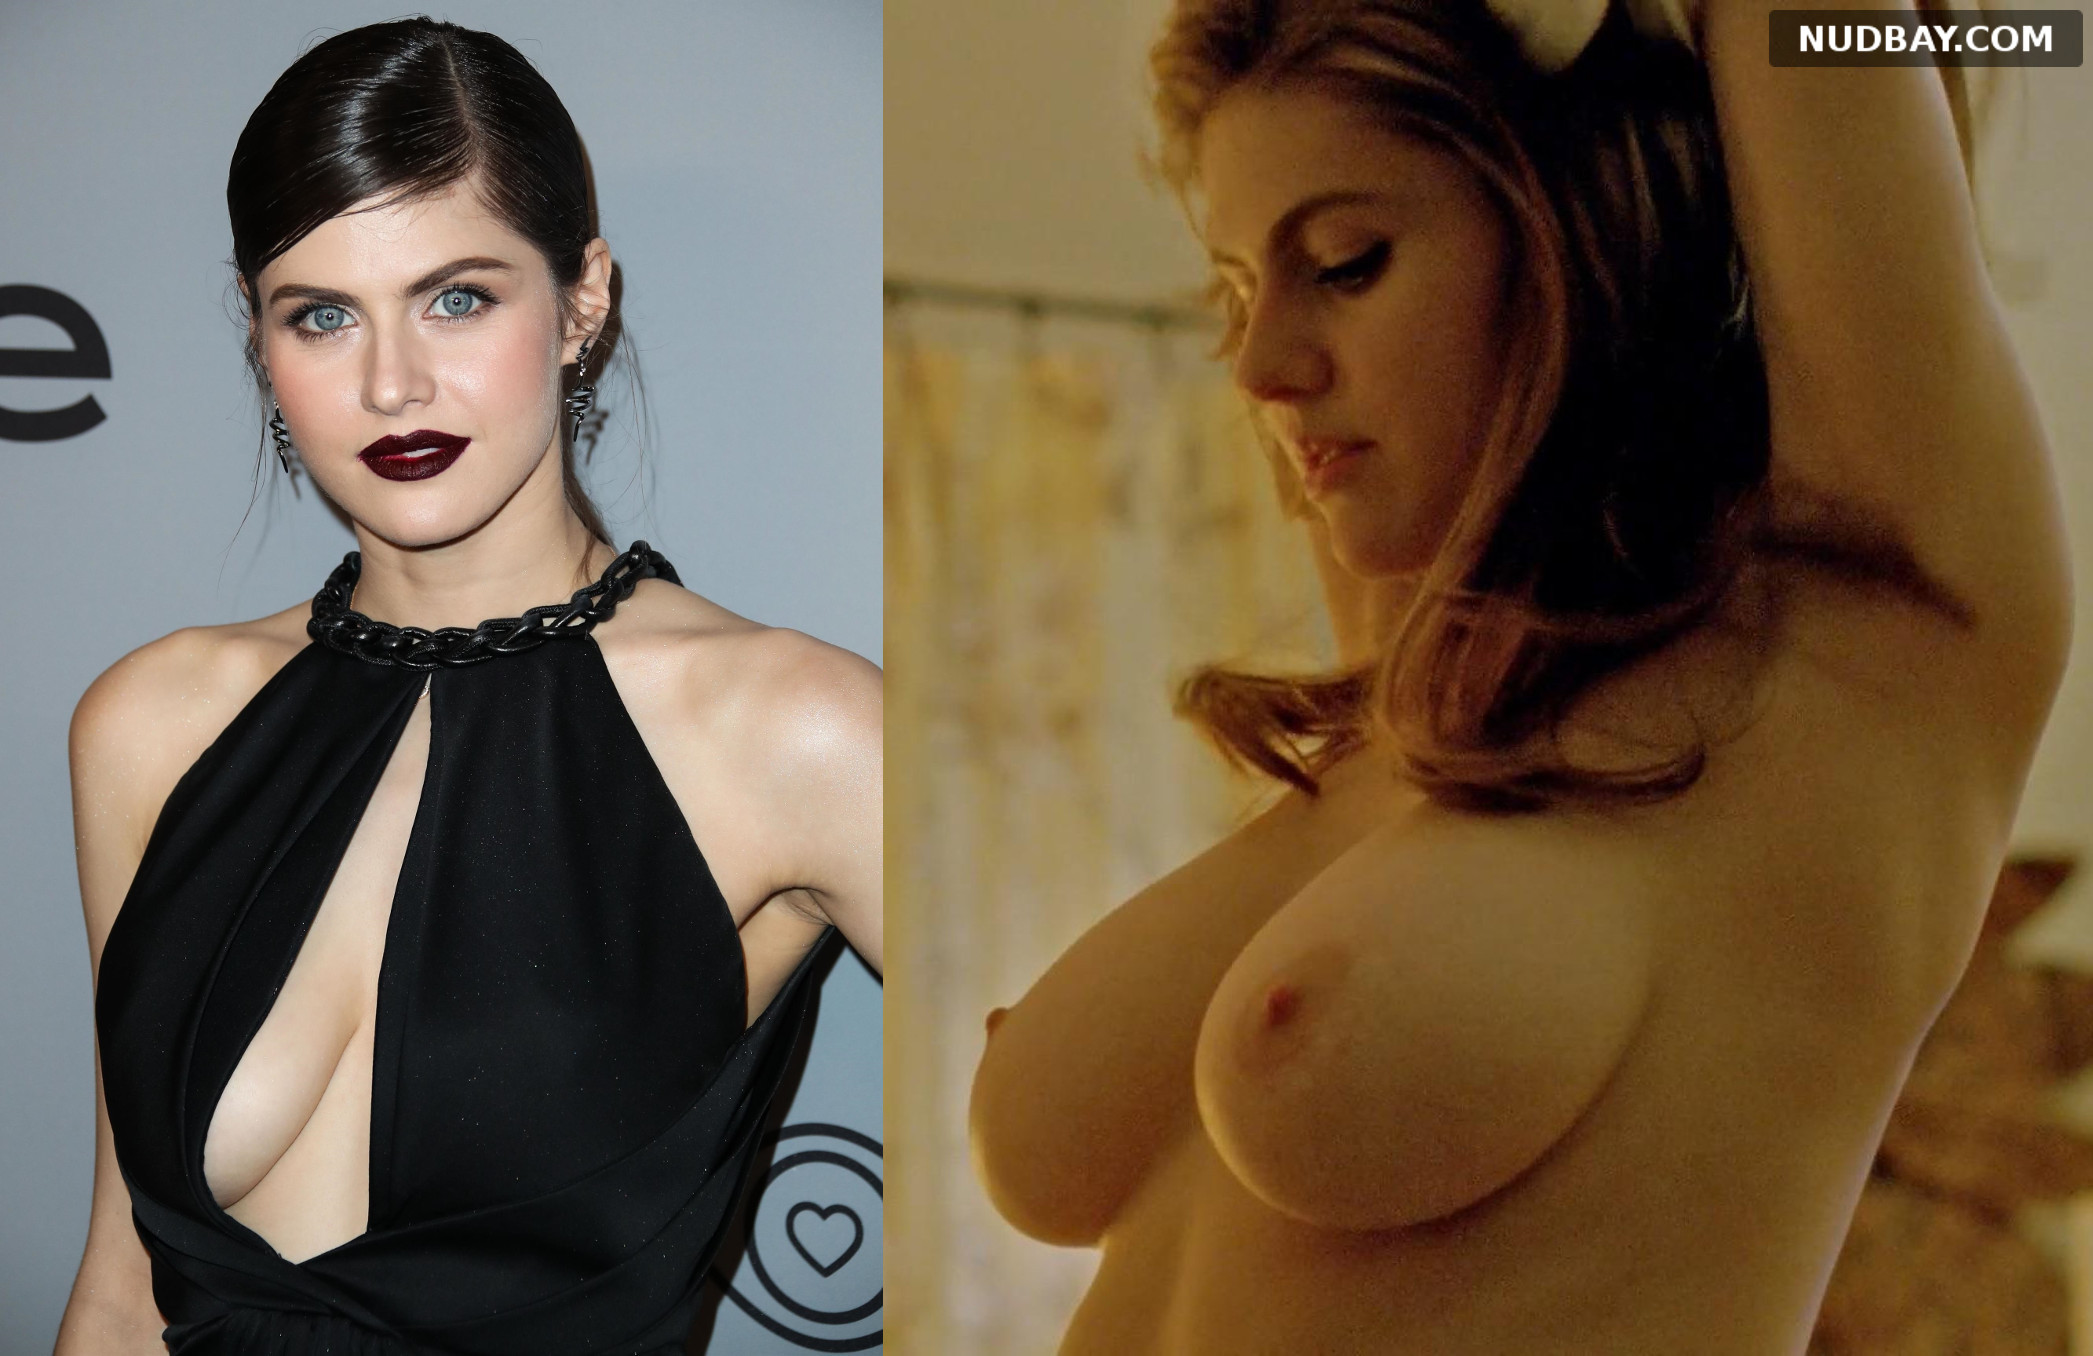 Alexandra dadario boobs